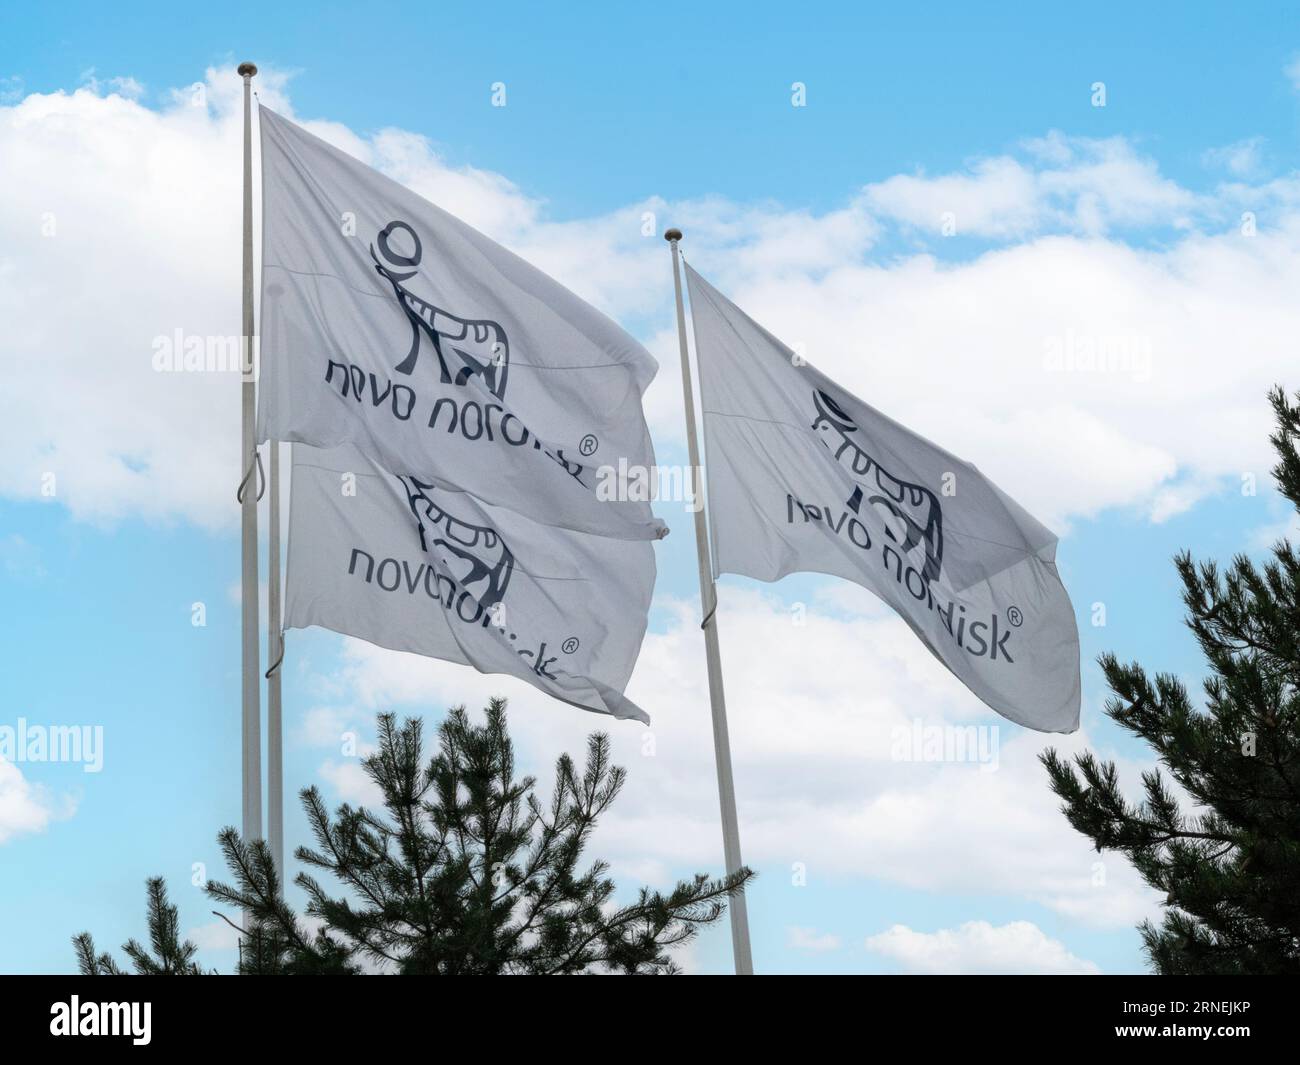 Novo Nordisk drapeaux ondulant d'un mât avec fond de ciel bleu. Une société pharmaceutique dont le siège est au Danemark. Copenhague, Danemark - août 12 Banque D'Images